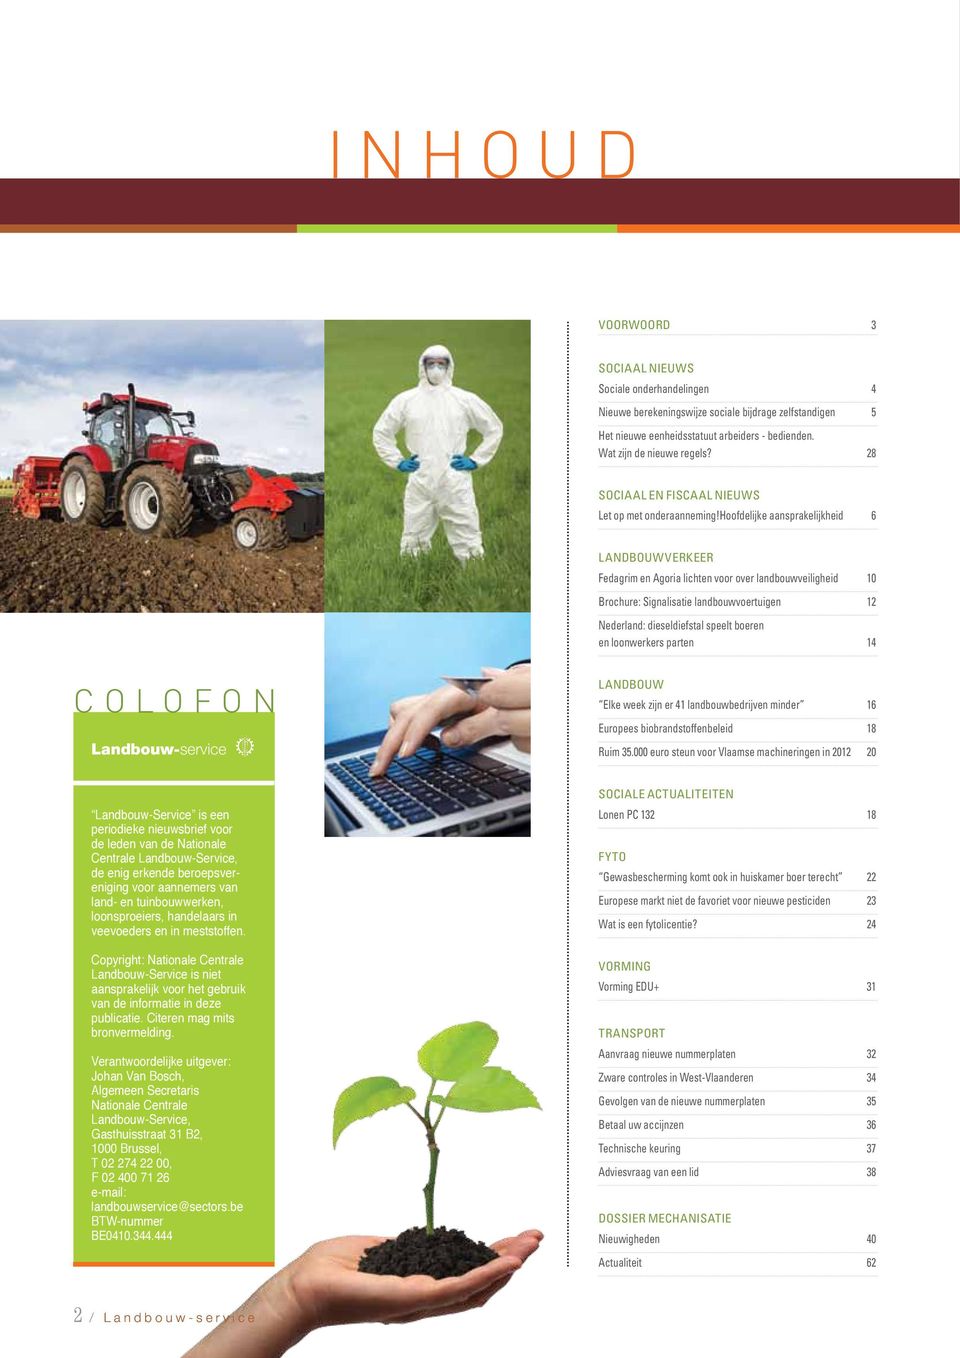 hoofdelijke aansprakelijkheid 6 LANDBOUWVERKEER Fedagrim en Agoria lichten voor over landbouwveiligheid 10 Brochure: Signalisatie landbouwvoertuigen 12 Nederland: dieseldiefstal speelt boeren en